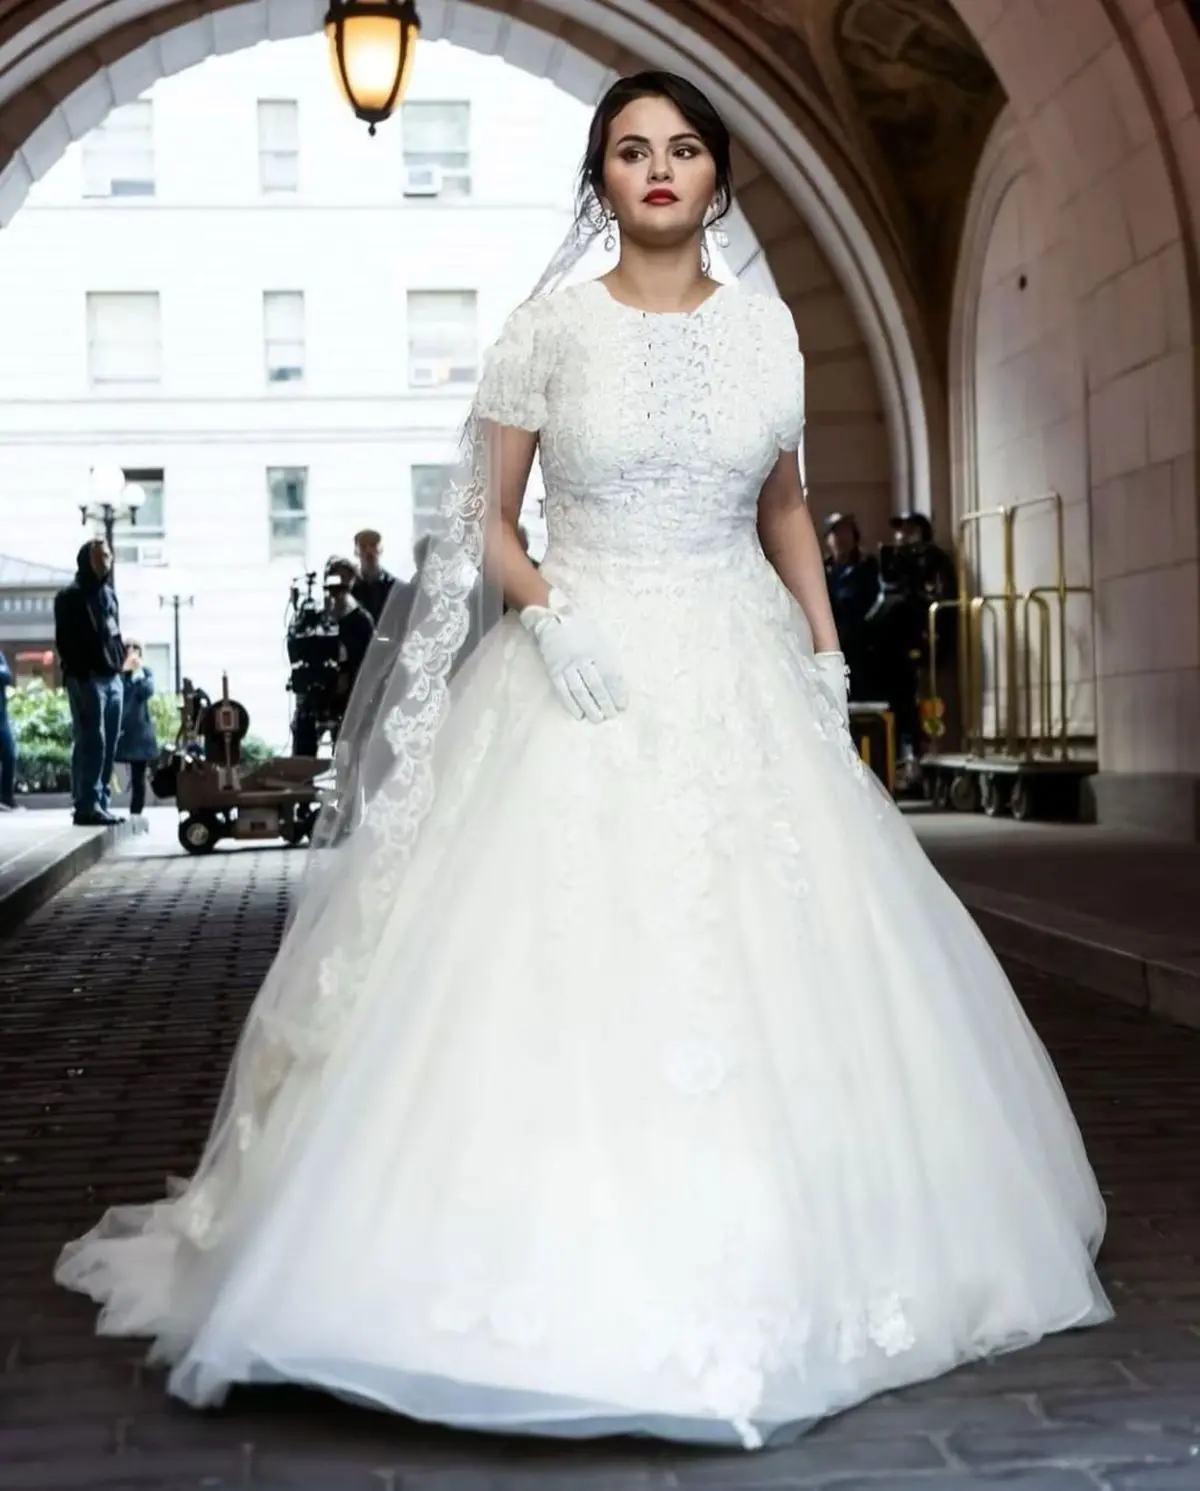 “سلنا گومز” بازیگر و خواننده 30 ساله عروس شد/ تصاویر